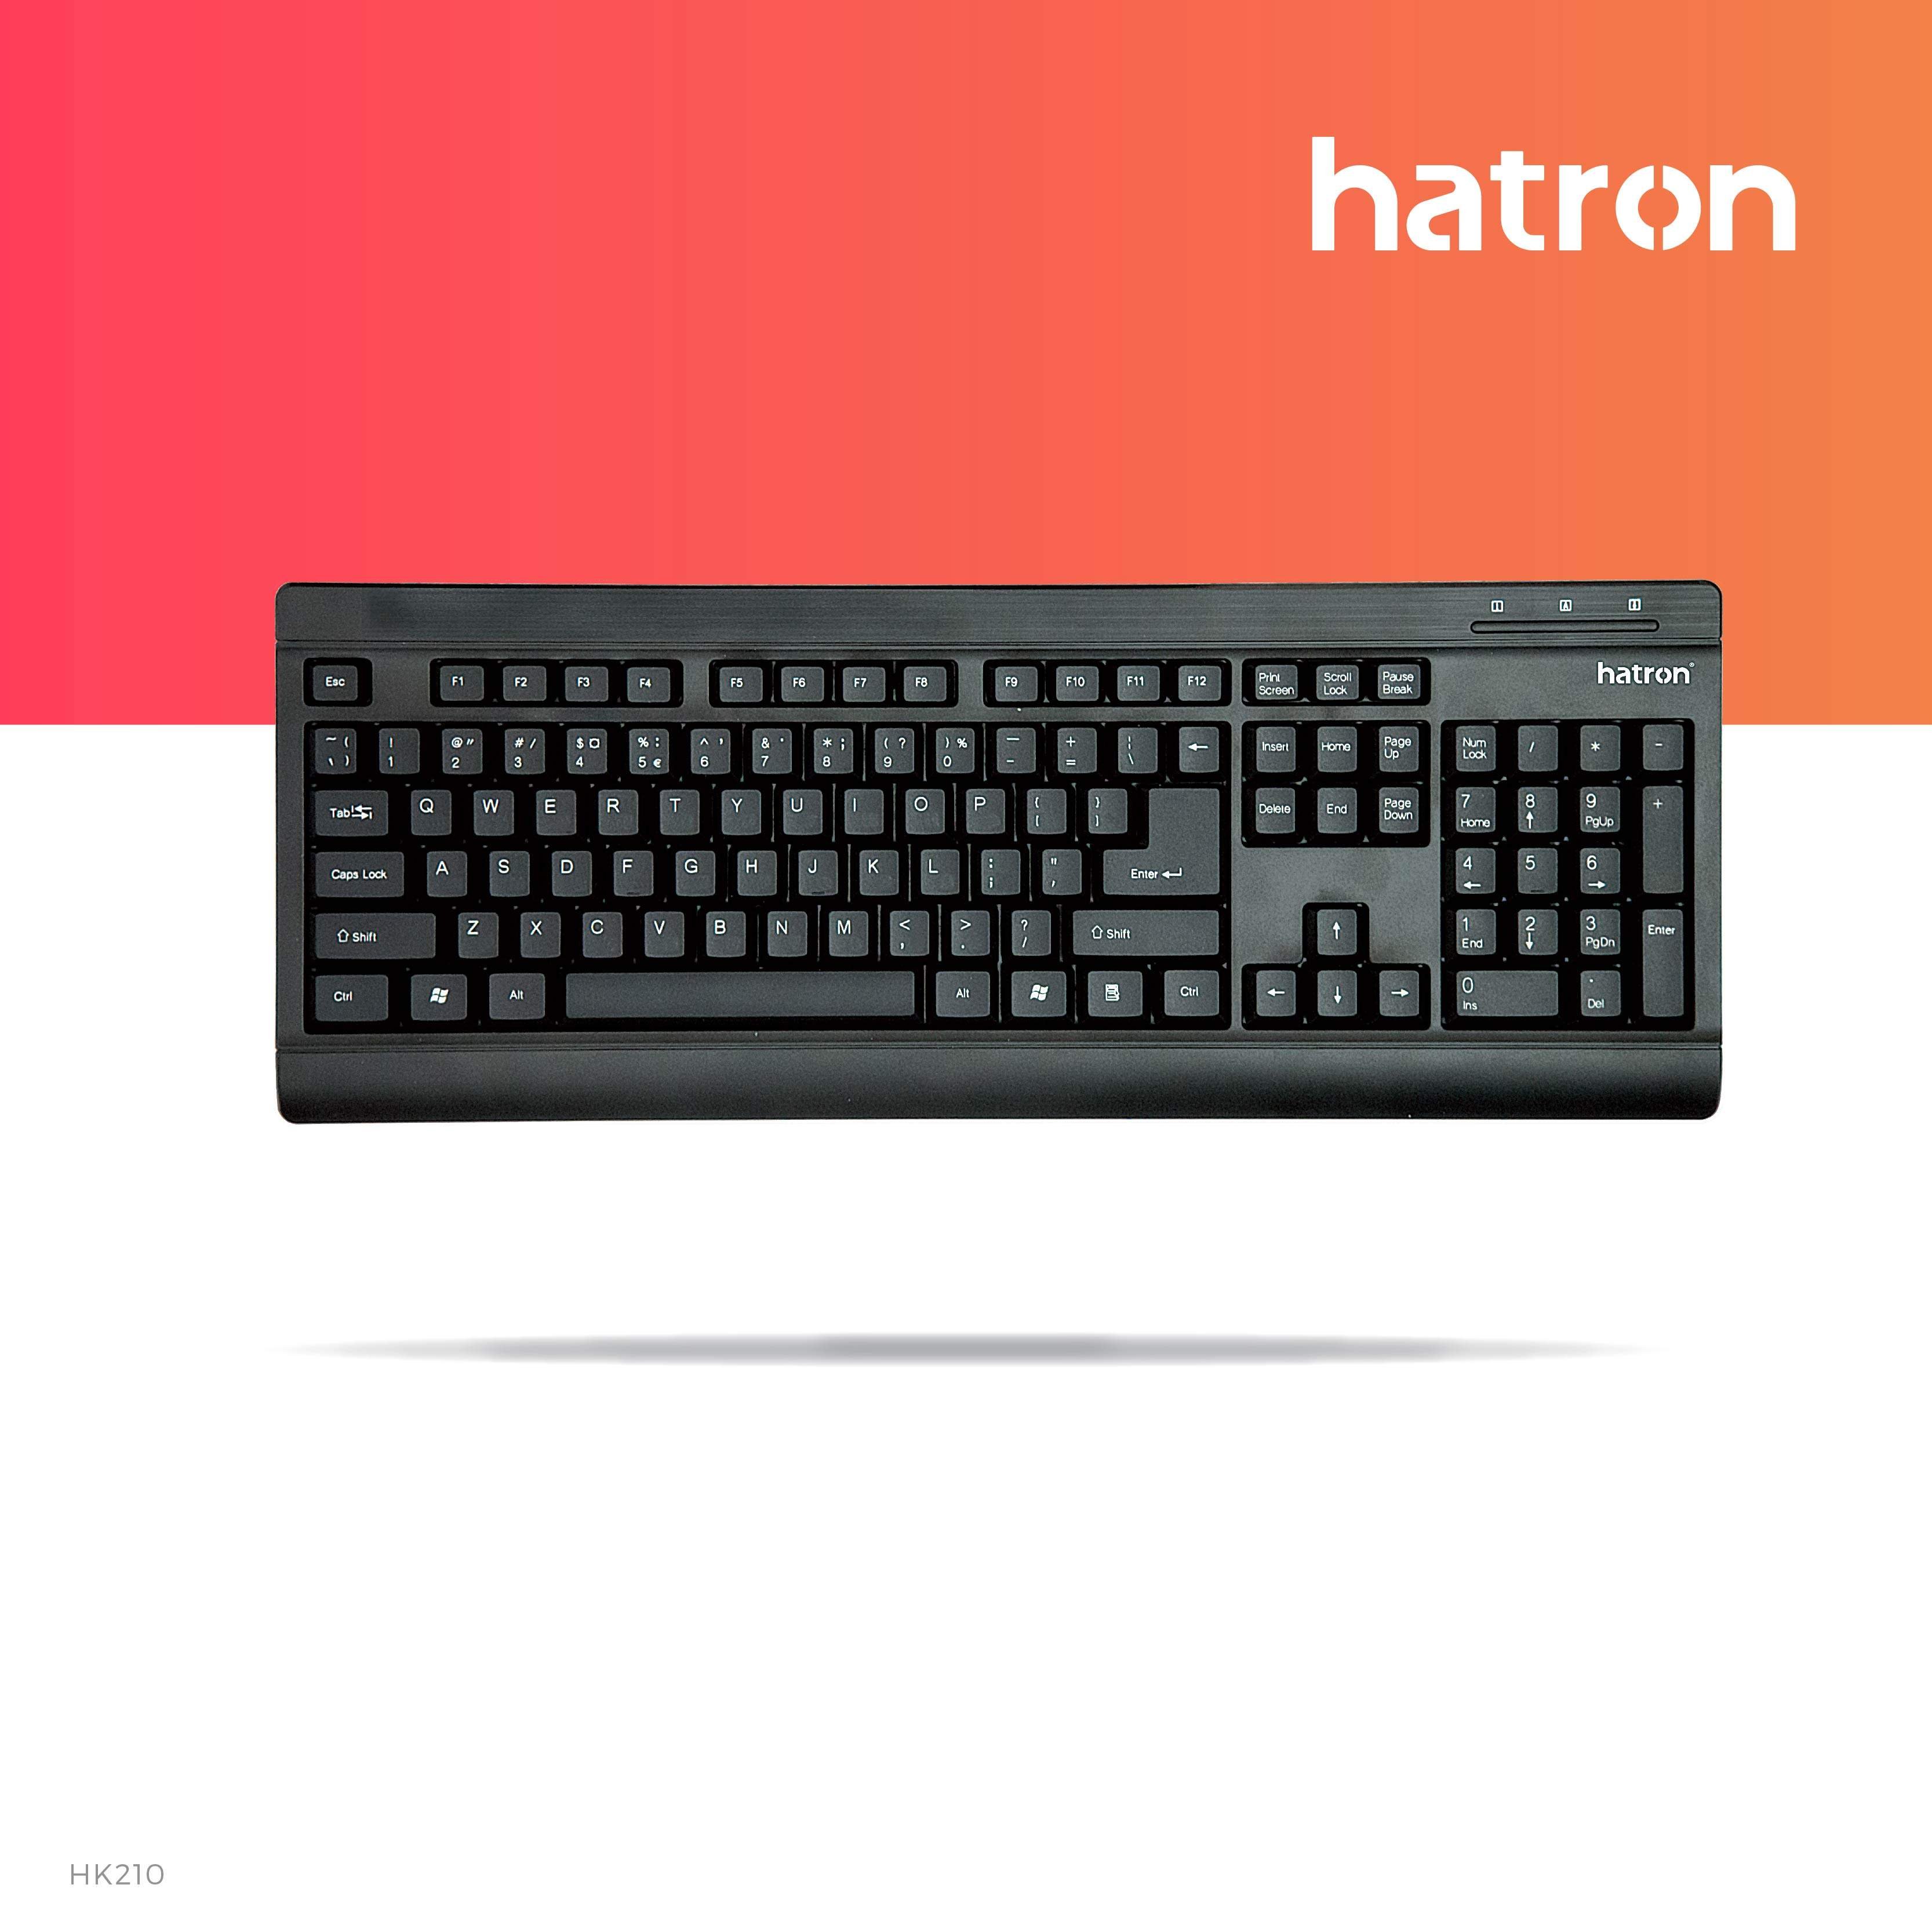 HK210 keyboard